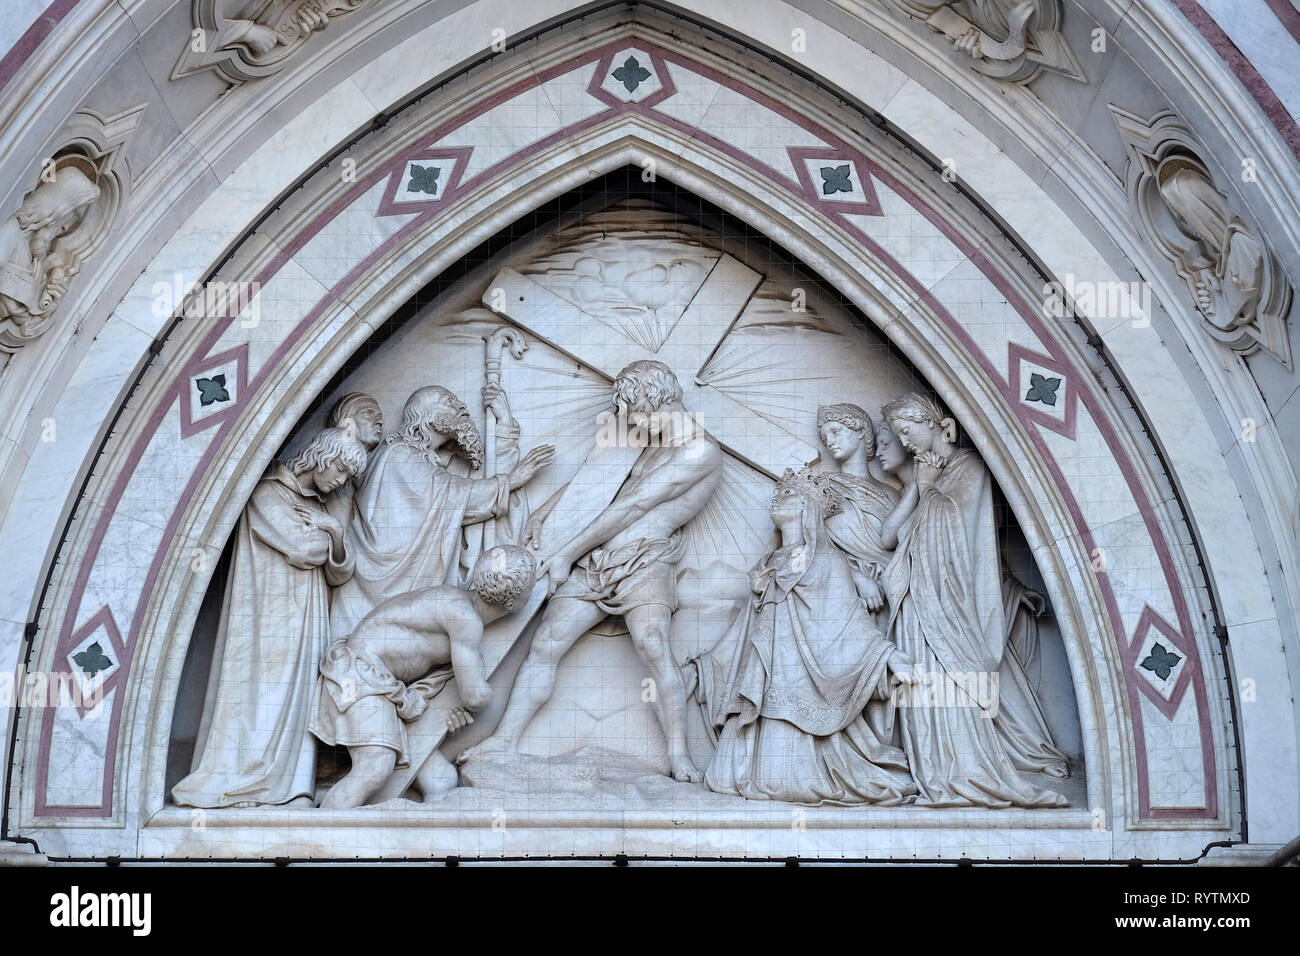 L'invention de la croix, par Titto Sarrocchi, Lunette du portail gauche de la Basilique de Santa Croce (Basilique de la Sainte Croix) à Florence Banque D'Images